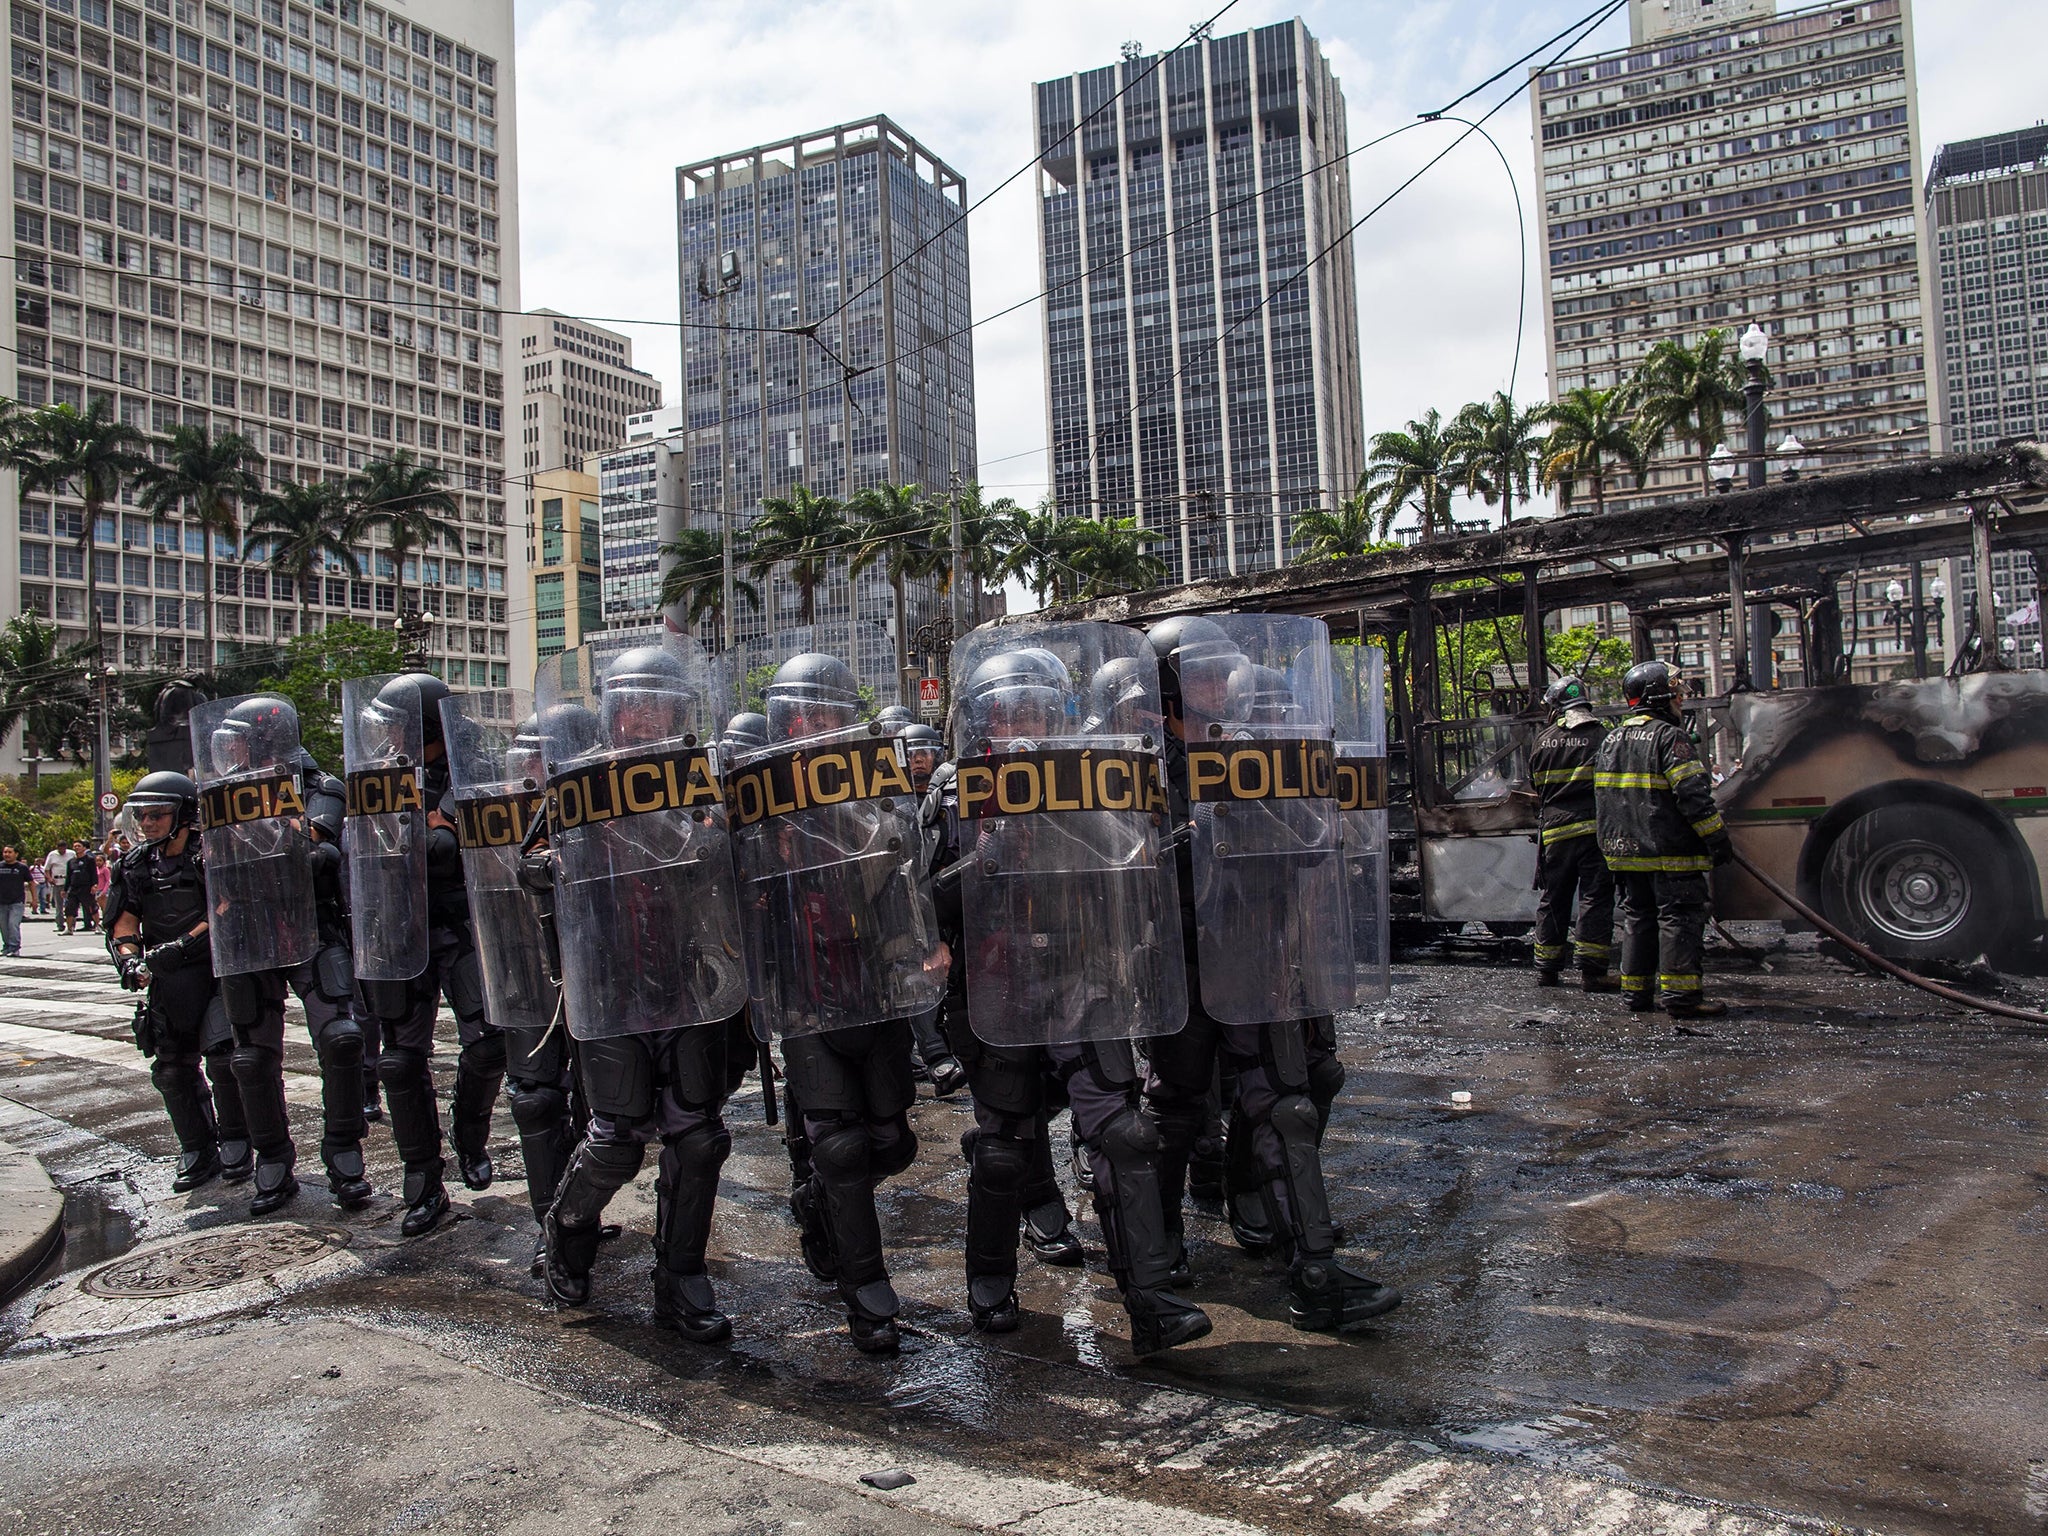 Police at a São Paulo protest